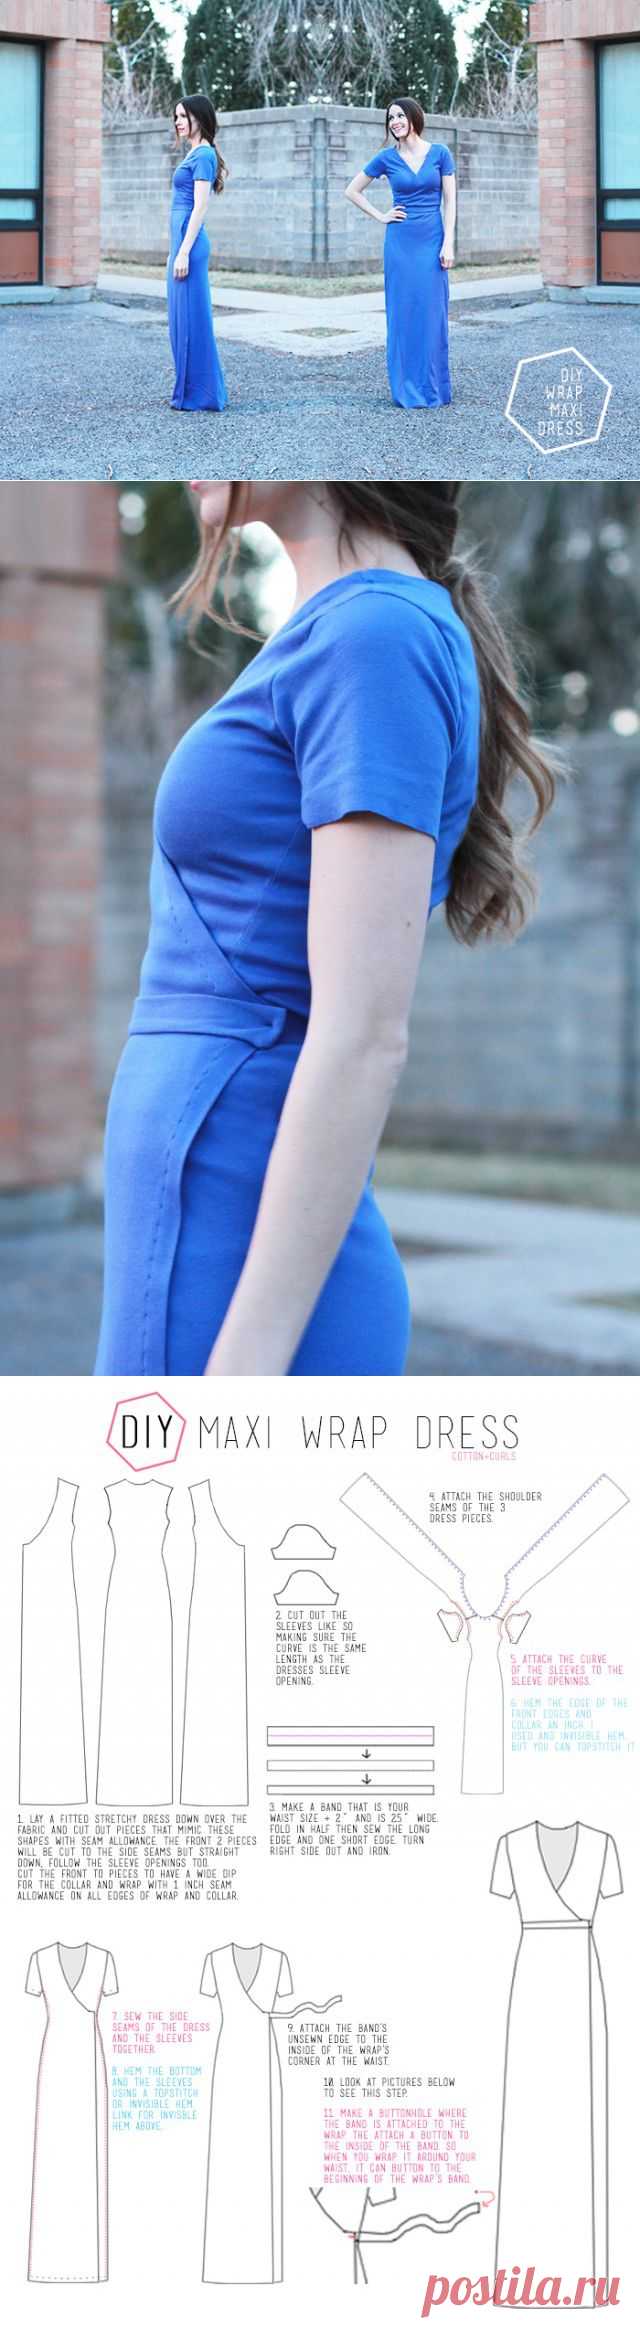 DIY maxi wrap dress